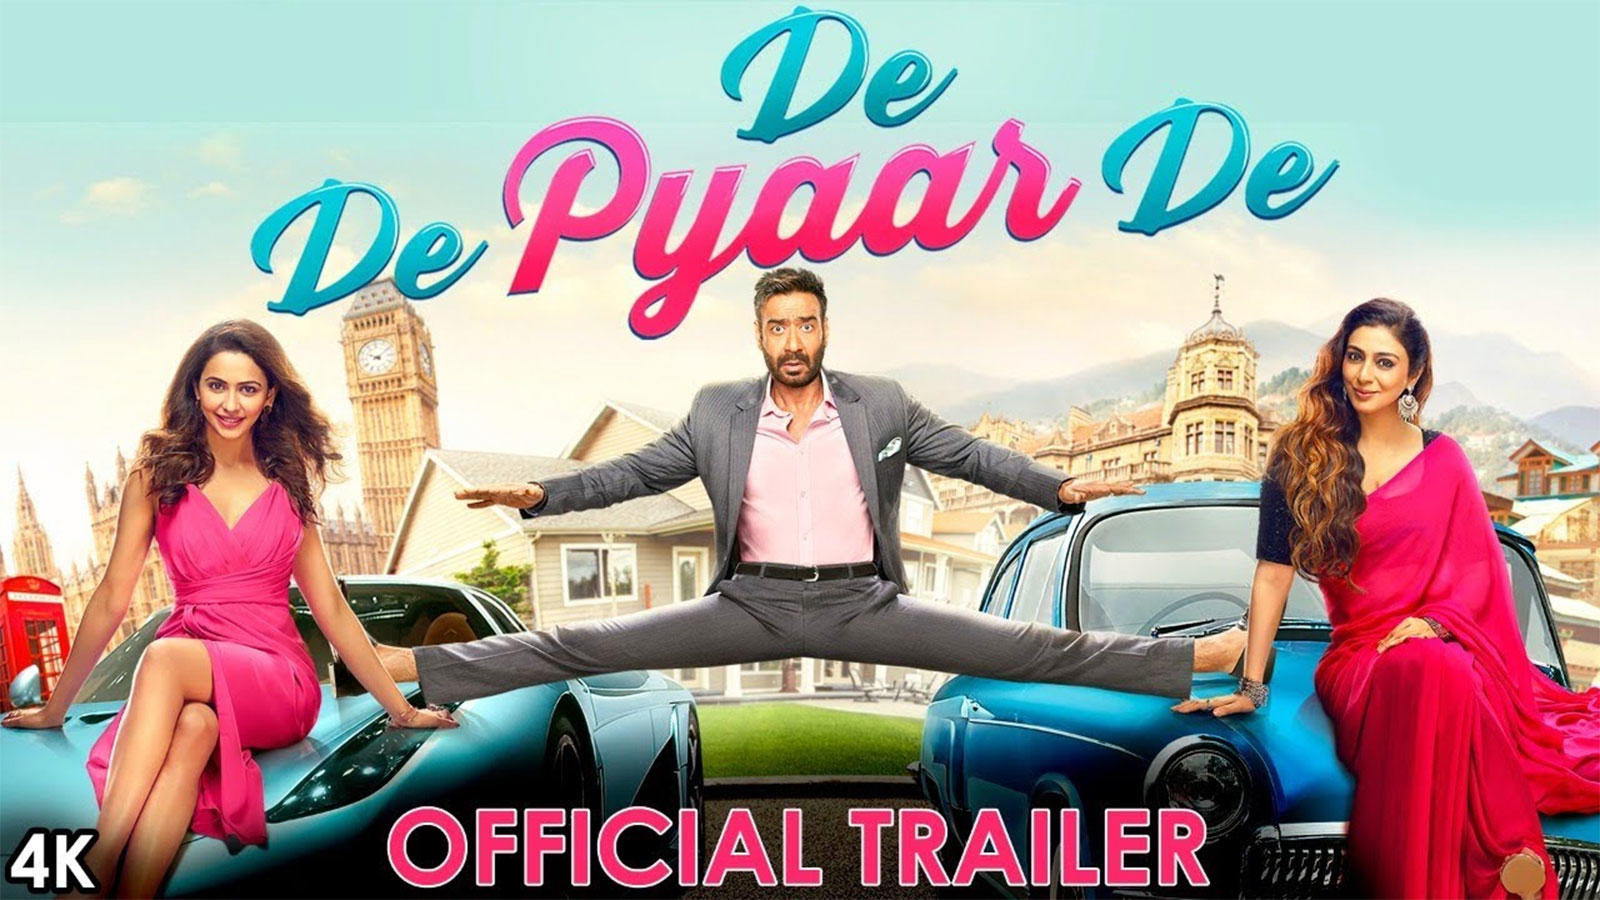 De De Pyaar De - Official Trailer 